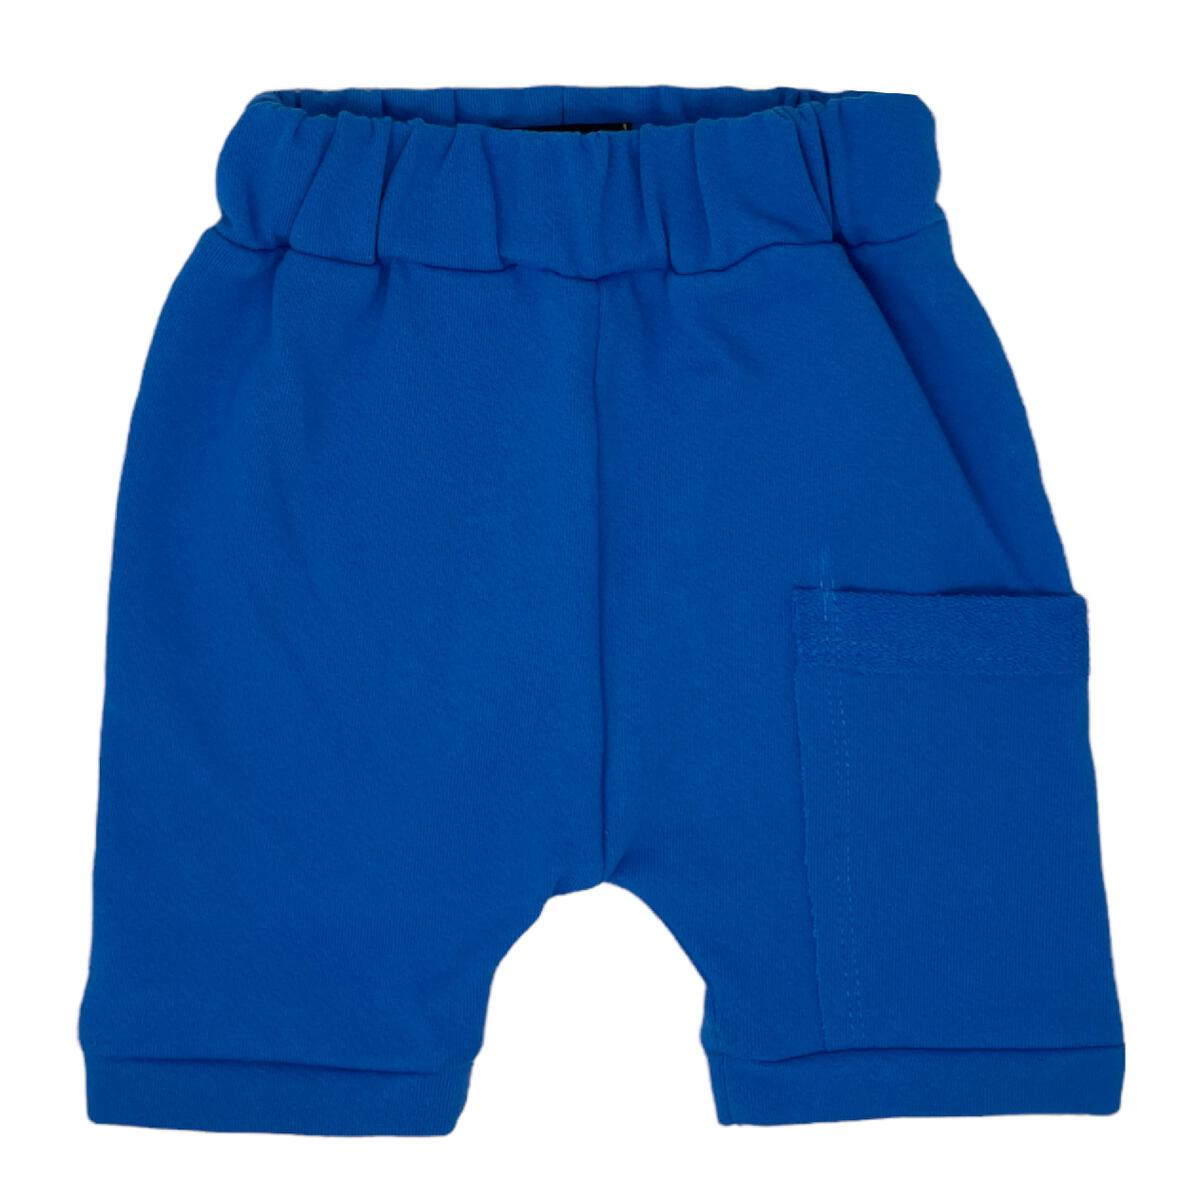 monday blues harem shorts